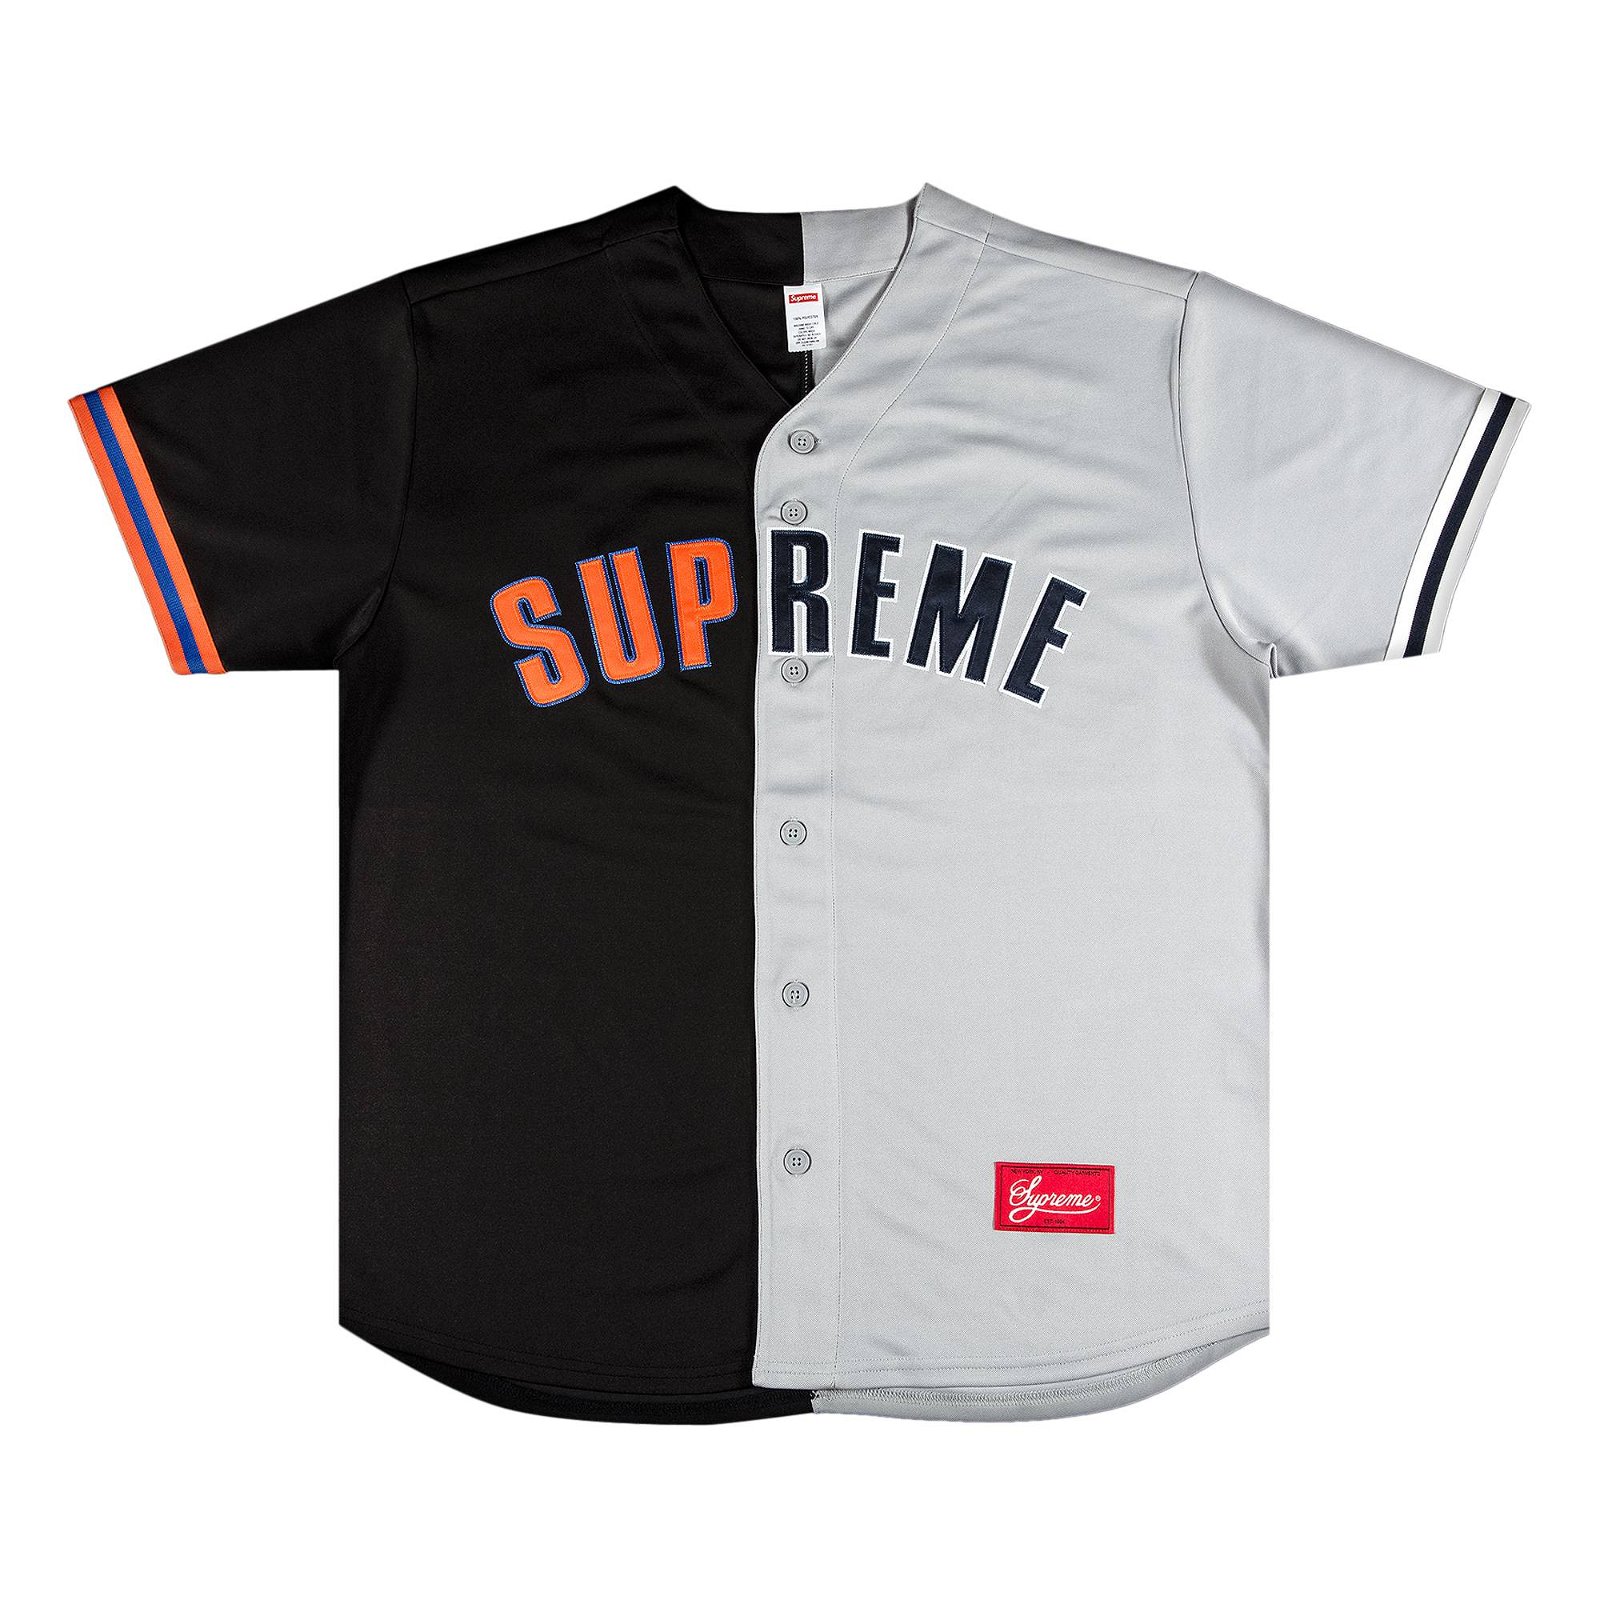 supreme baseball jersey